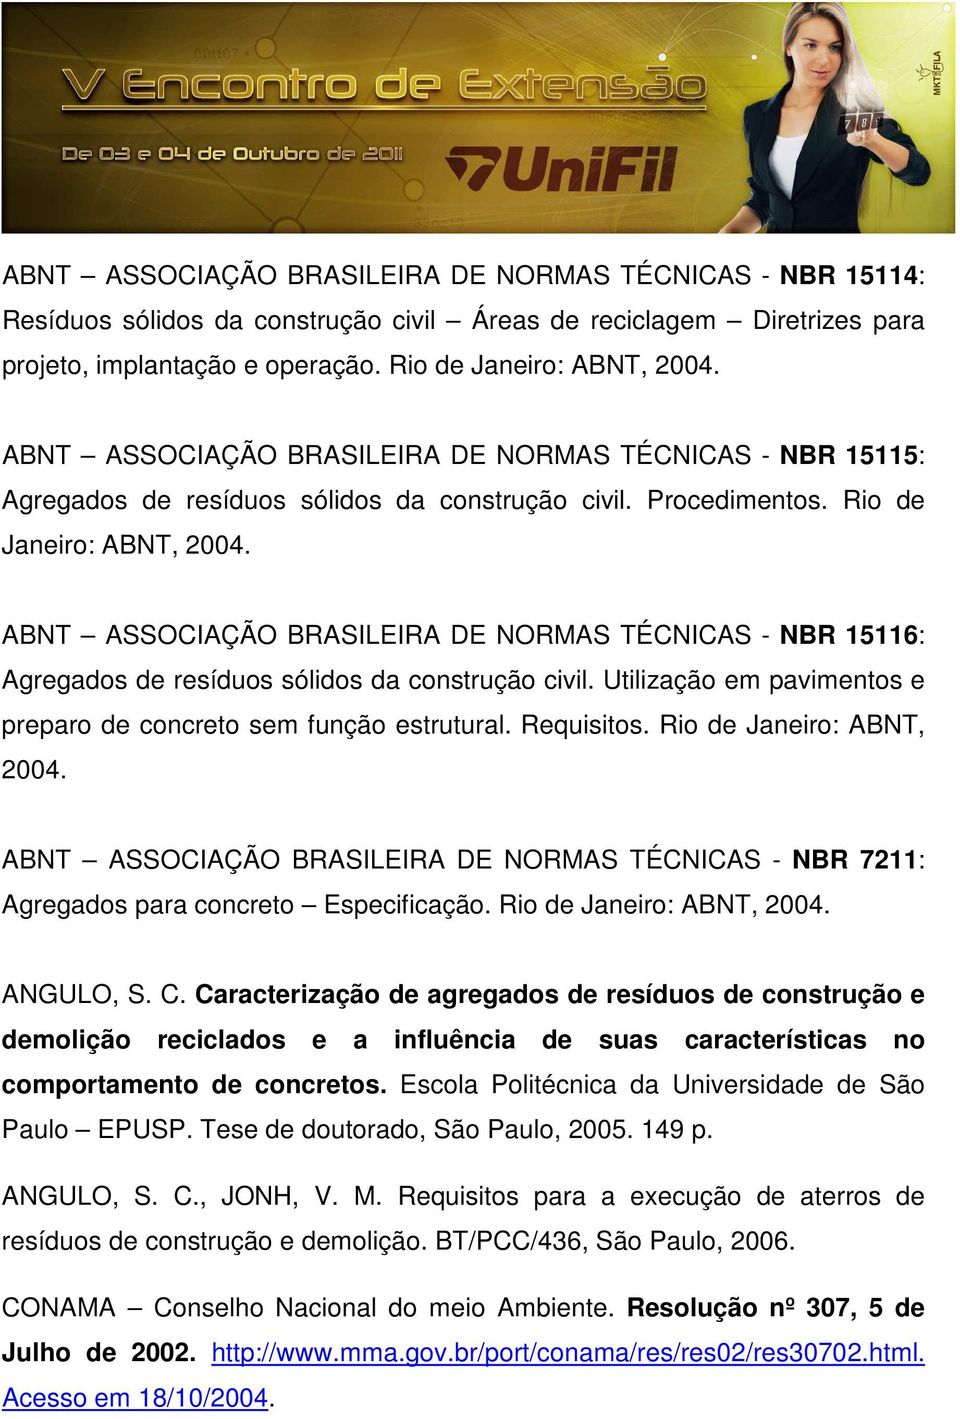 ABNT ASSOCIAÇÃO BRASILEIRA DE NORMAS TÉCNICAS - NBR 15116: Agregados de resíduos sólidos da construção civil. Utilização em pavimentos e preparo de concreto sem função estrutural. Requisitos.